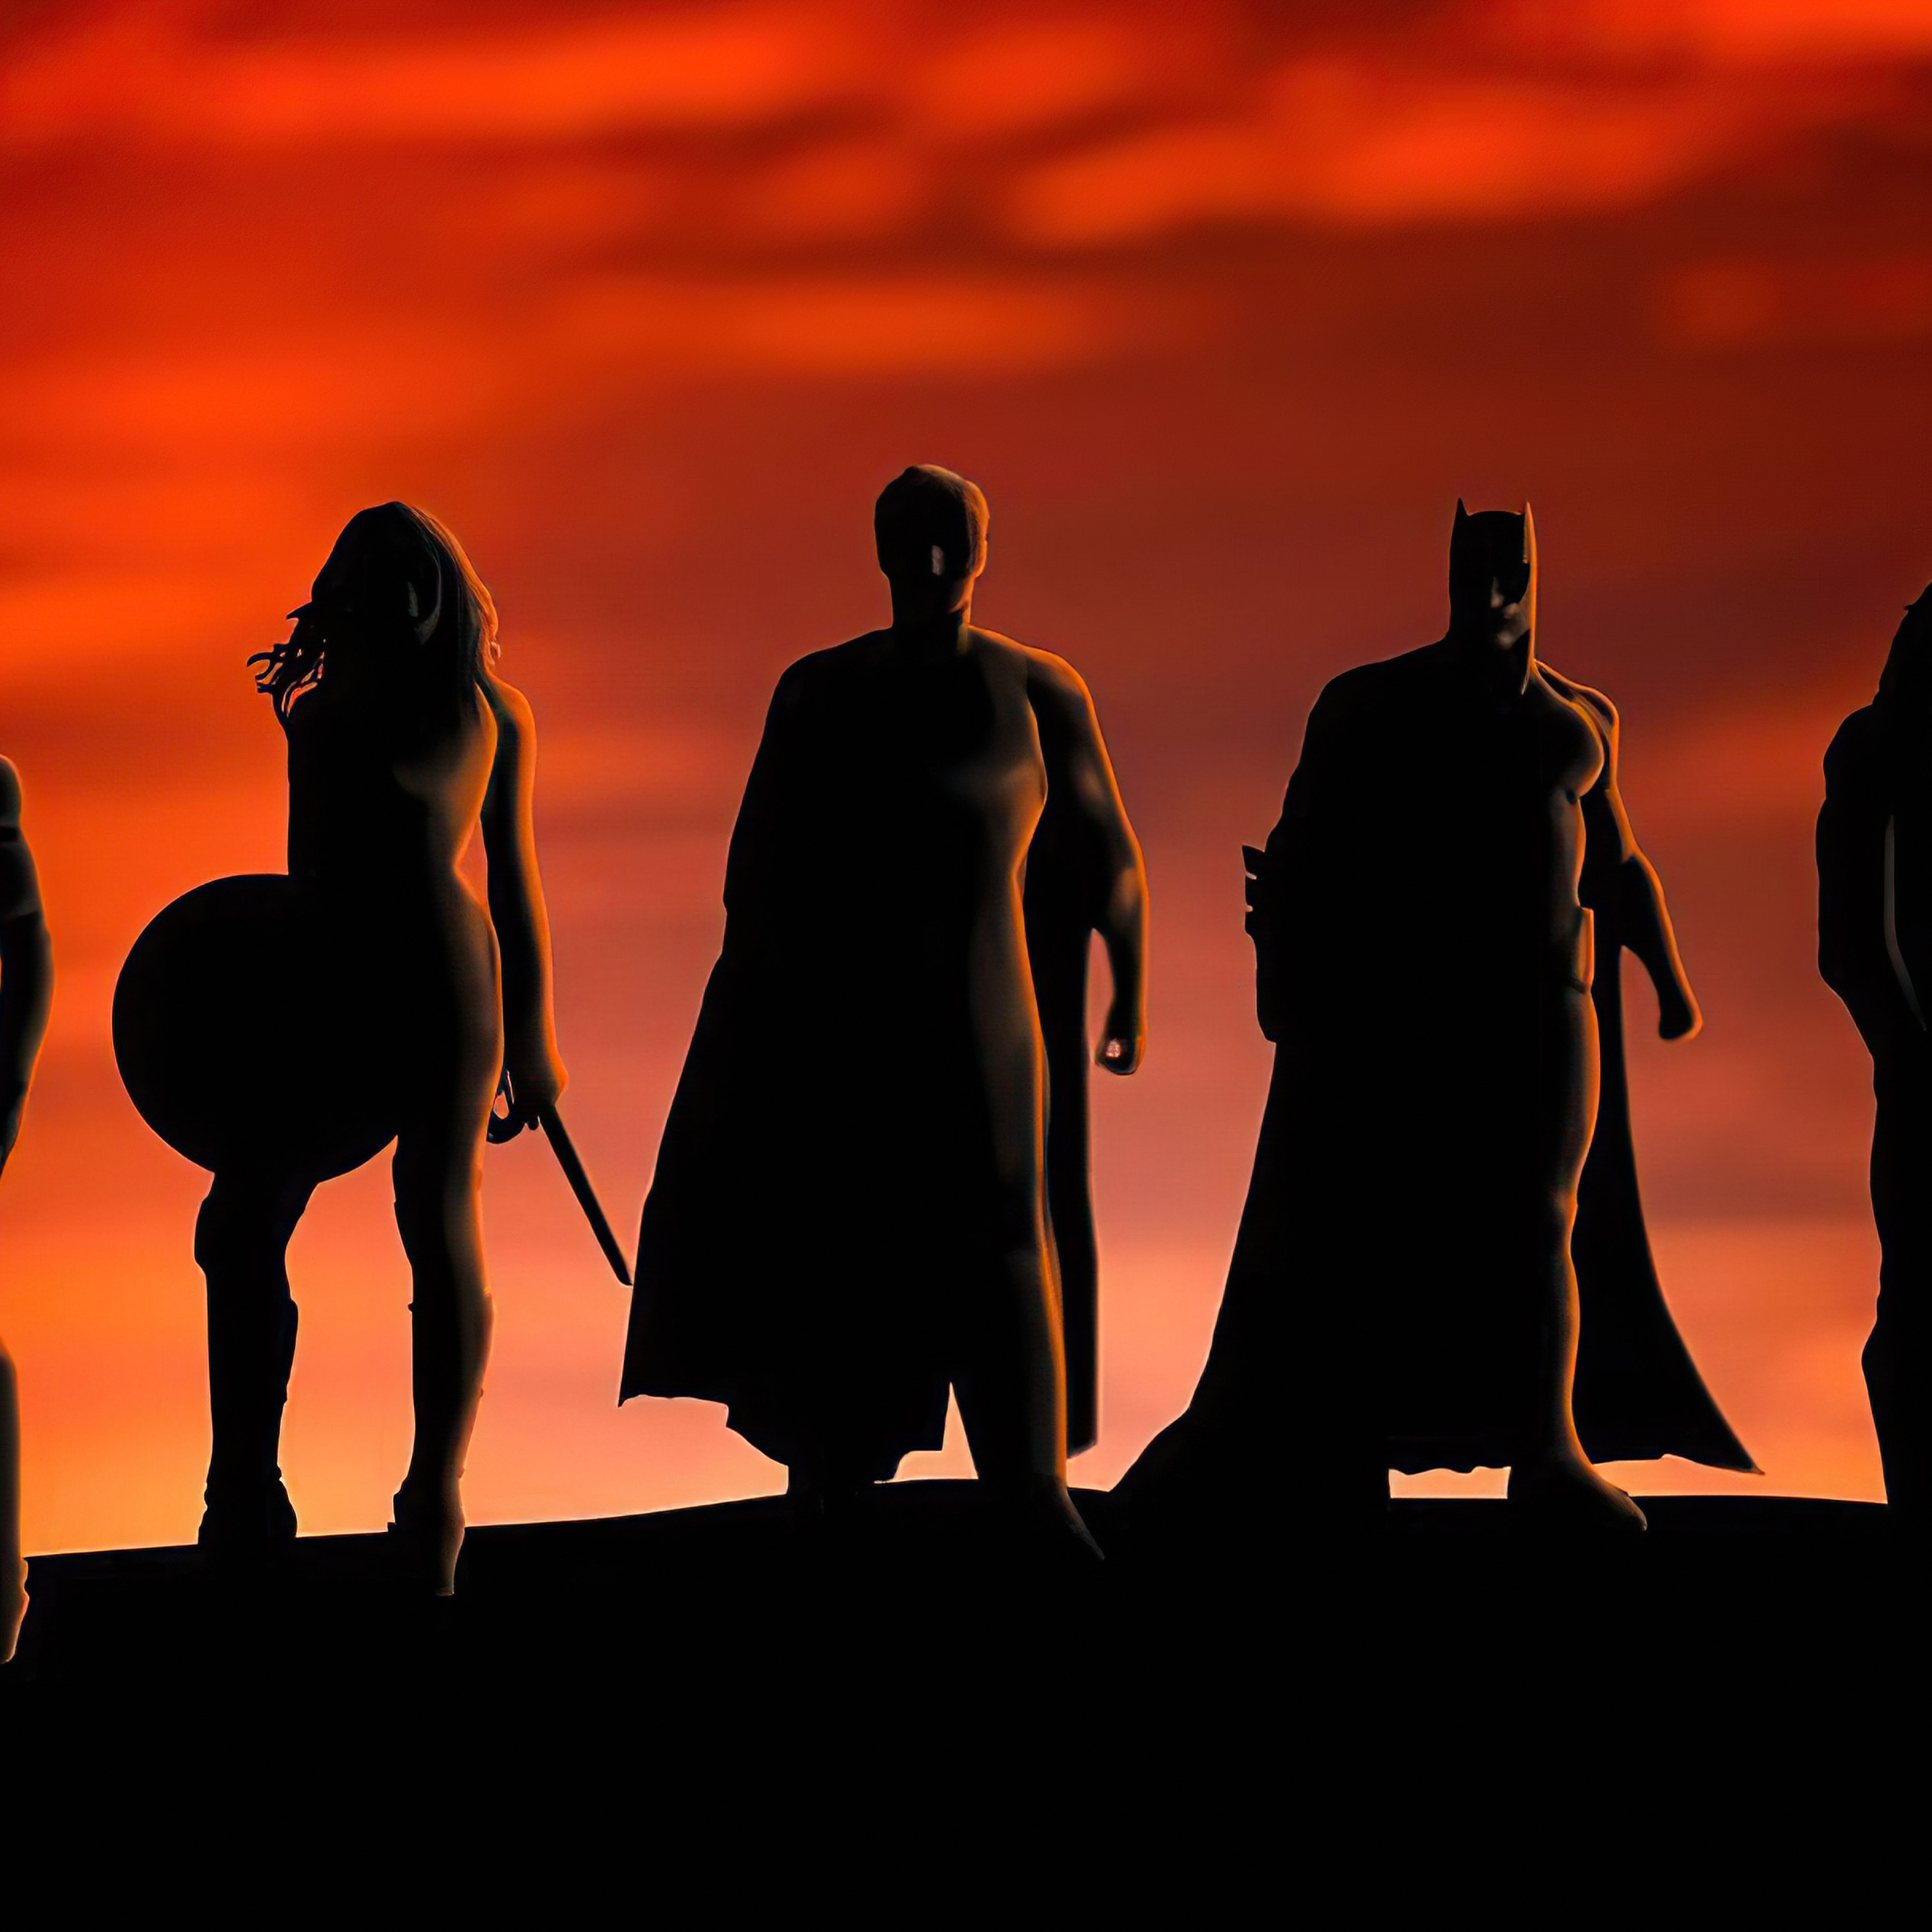 justice-league-heroes-silhouette-5k-59.jpg